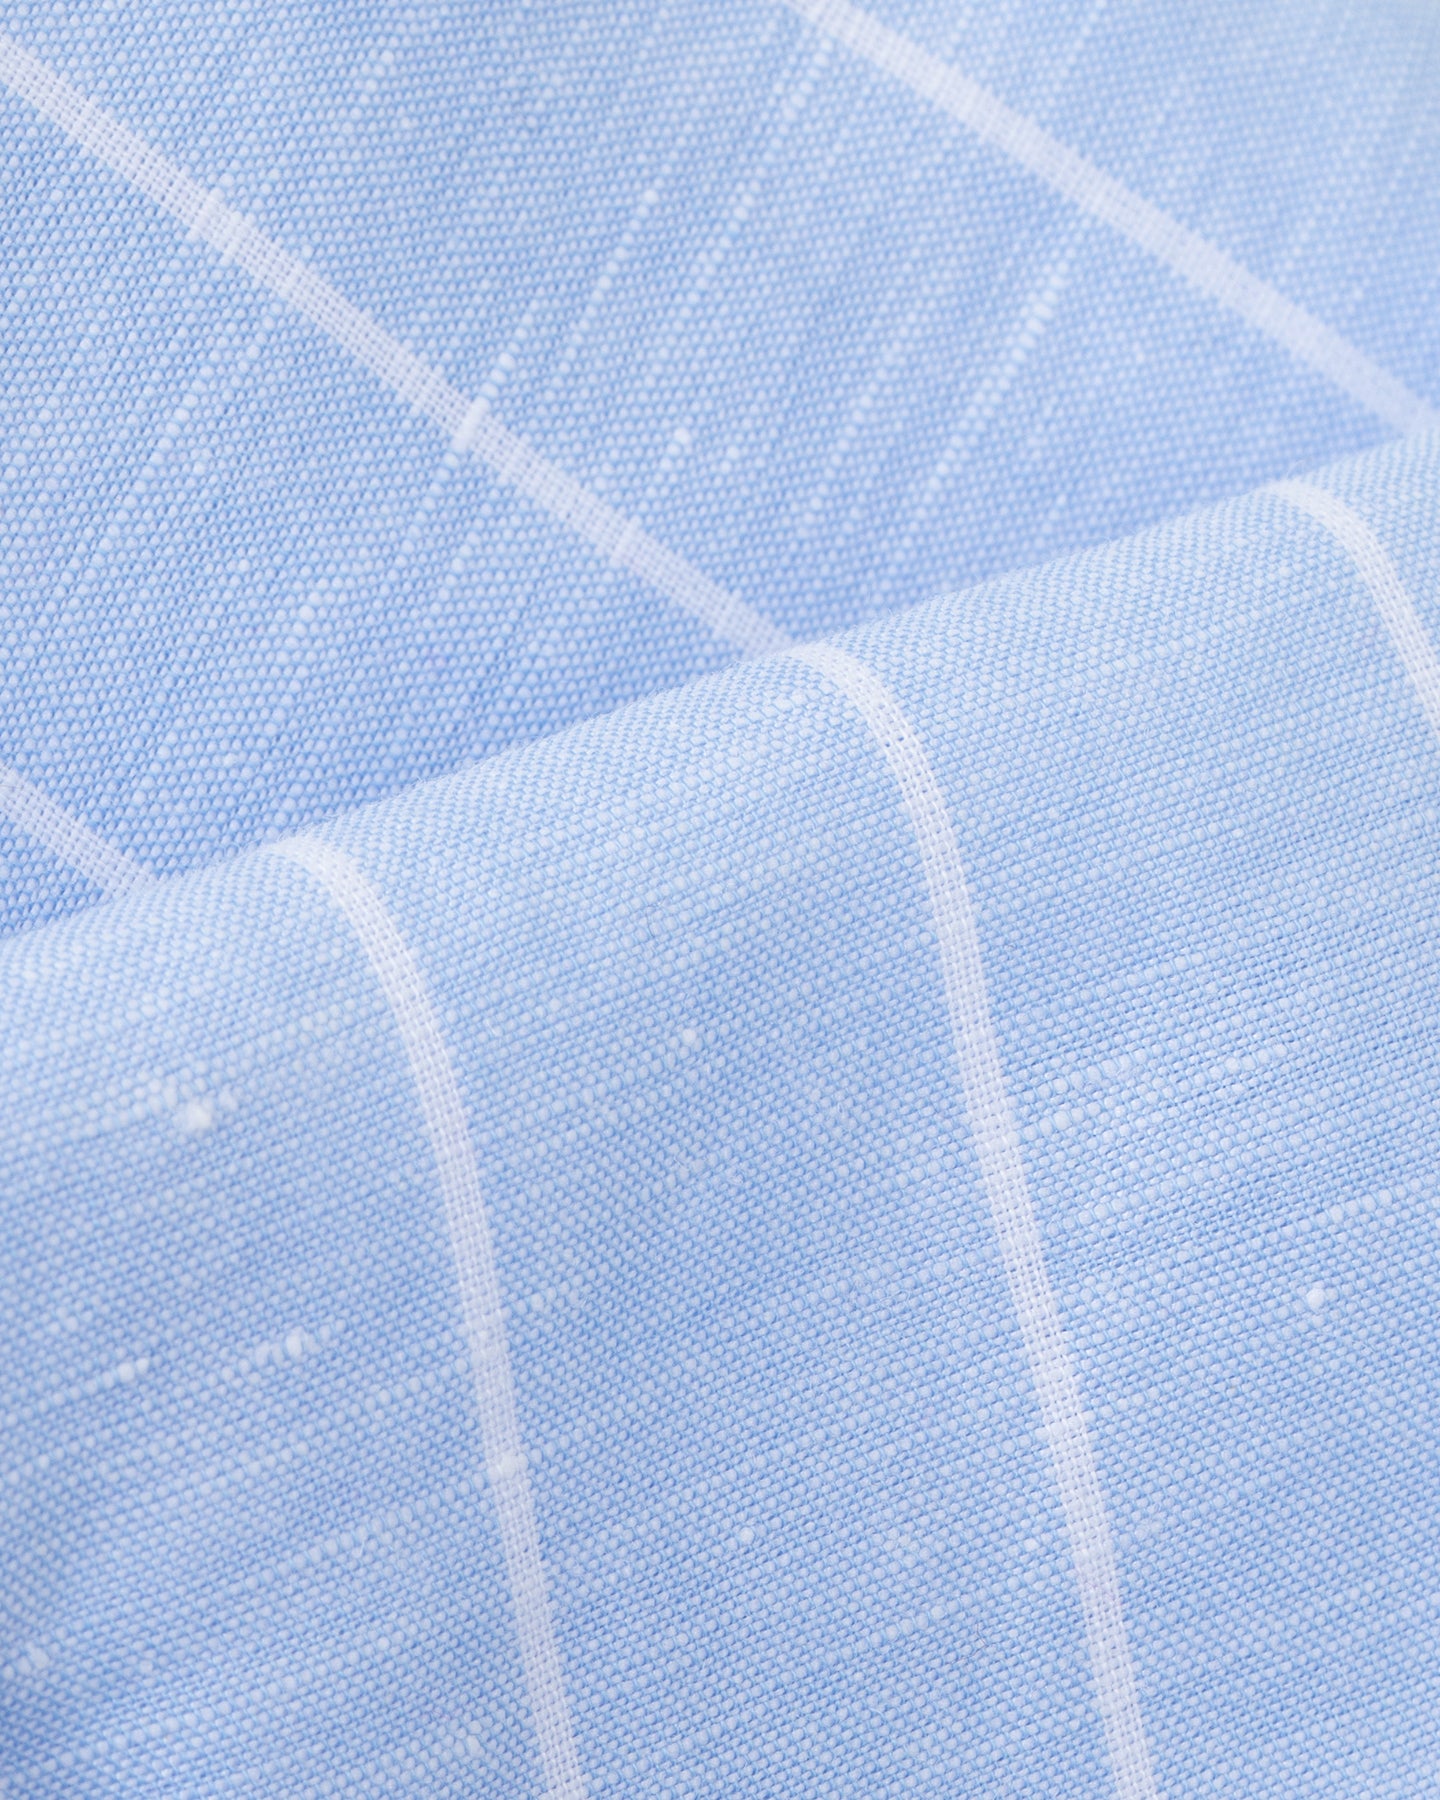 Light blue reverse stripe cotton linen shirt fabric